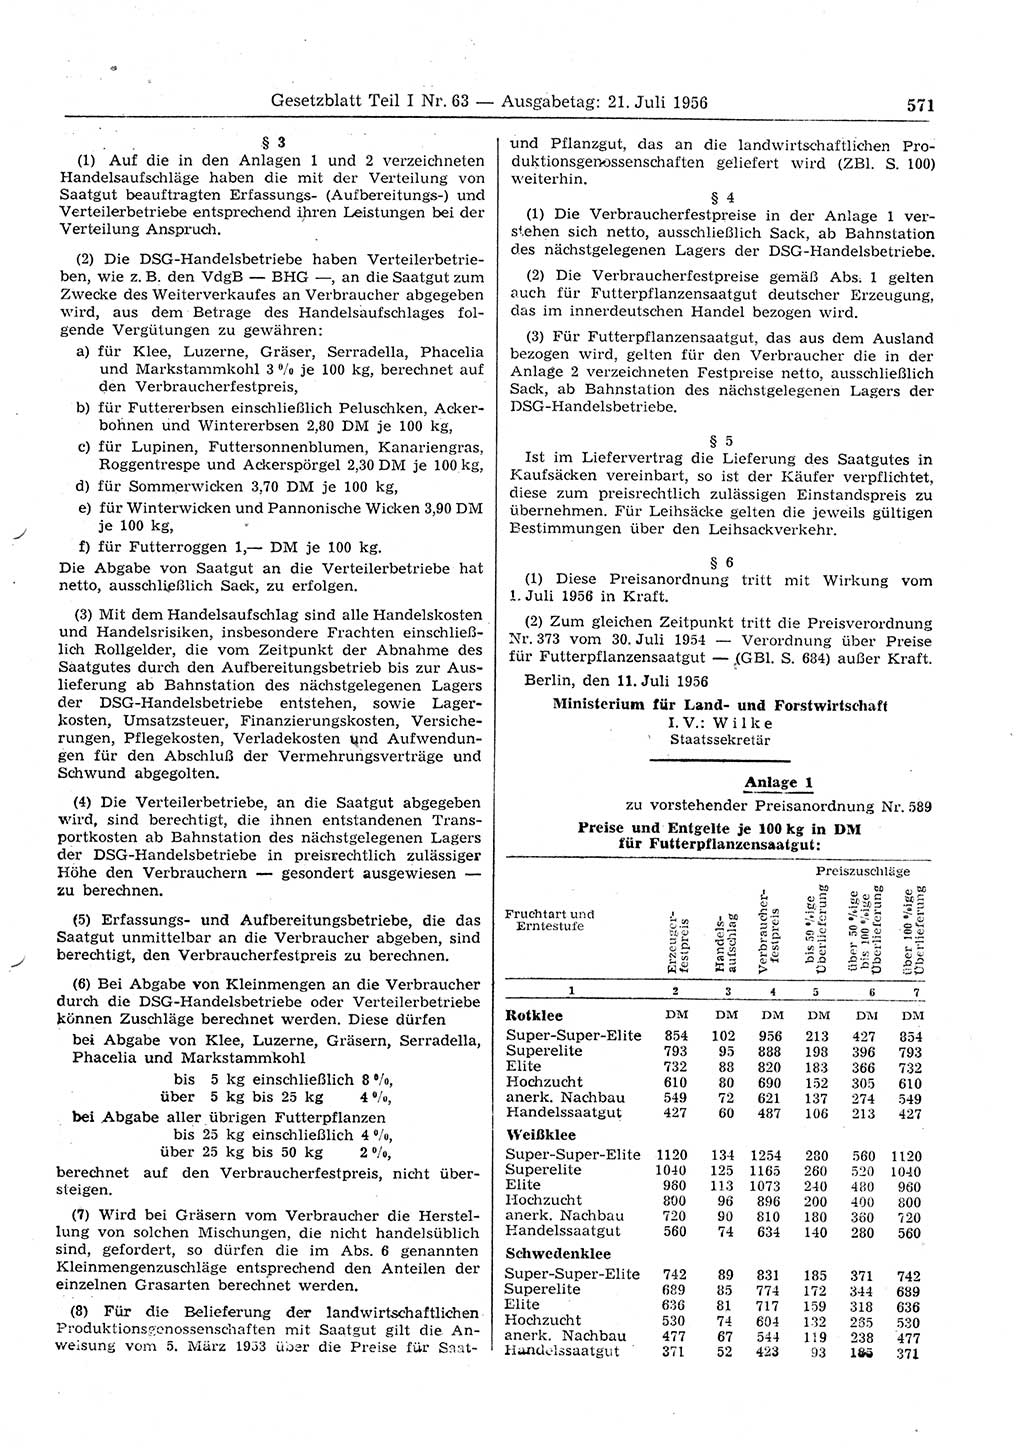 Gesetzblatt (GBl.) der Deutschen Demokratischen Republik (DDR) Teil Ⅰ 1956, Seite 571 (GBl. DDR Ⅰ 1956, S. 571)